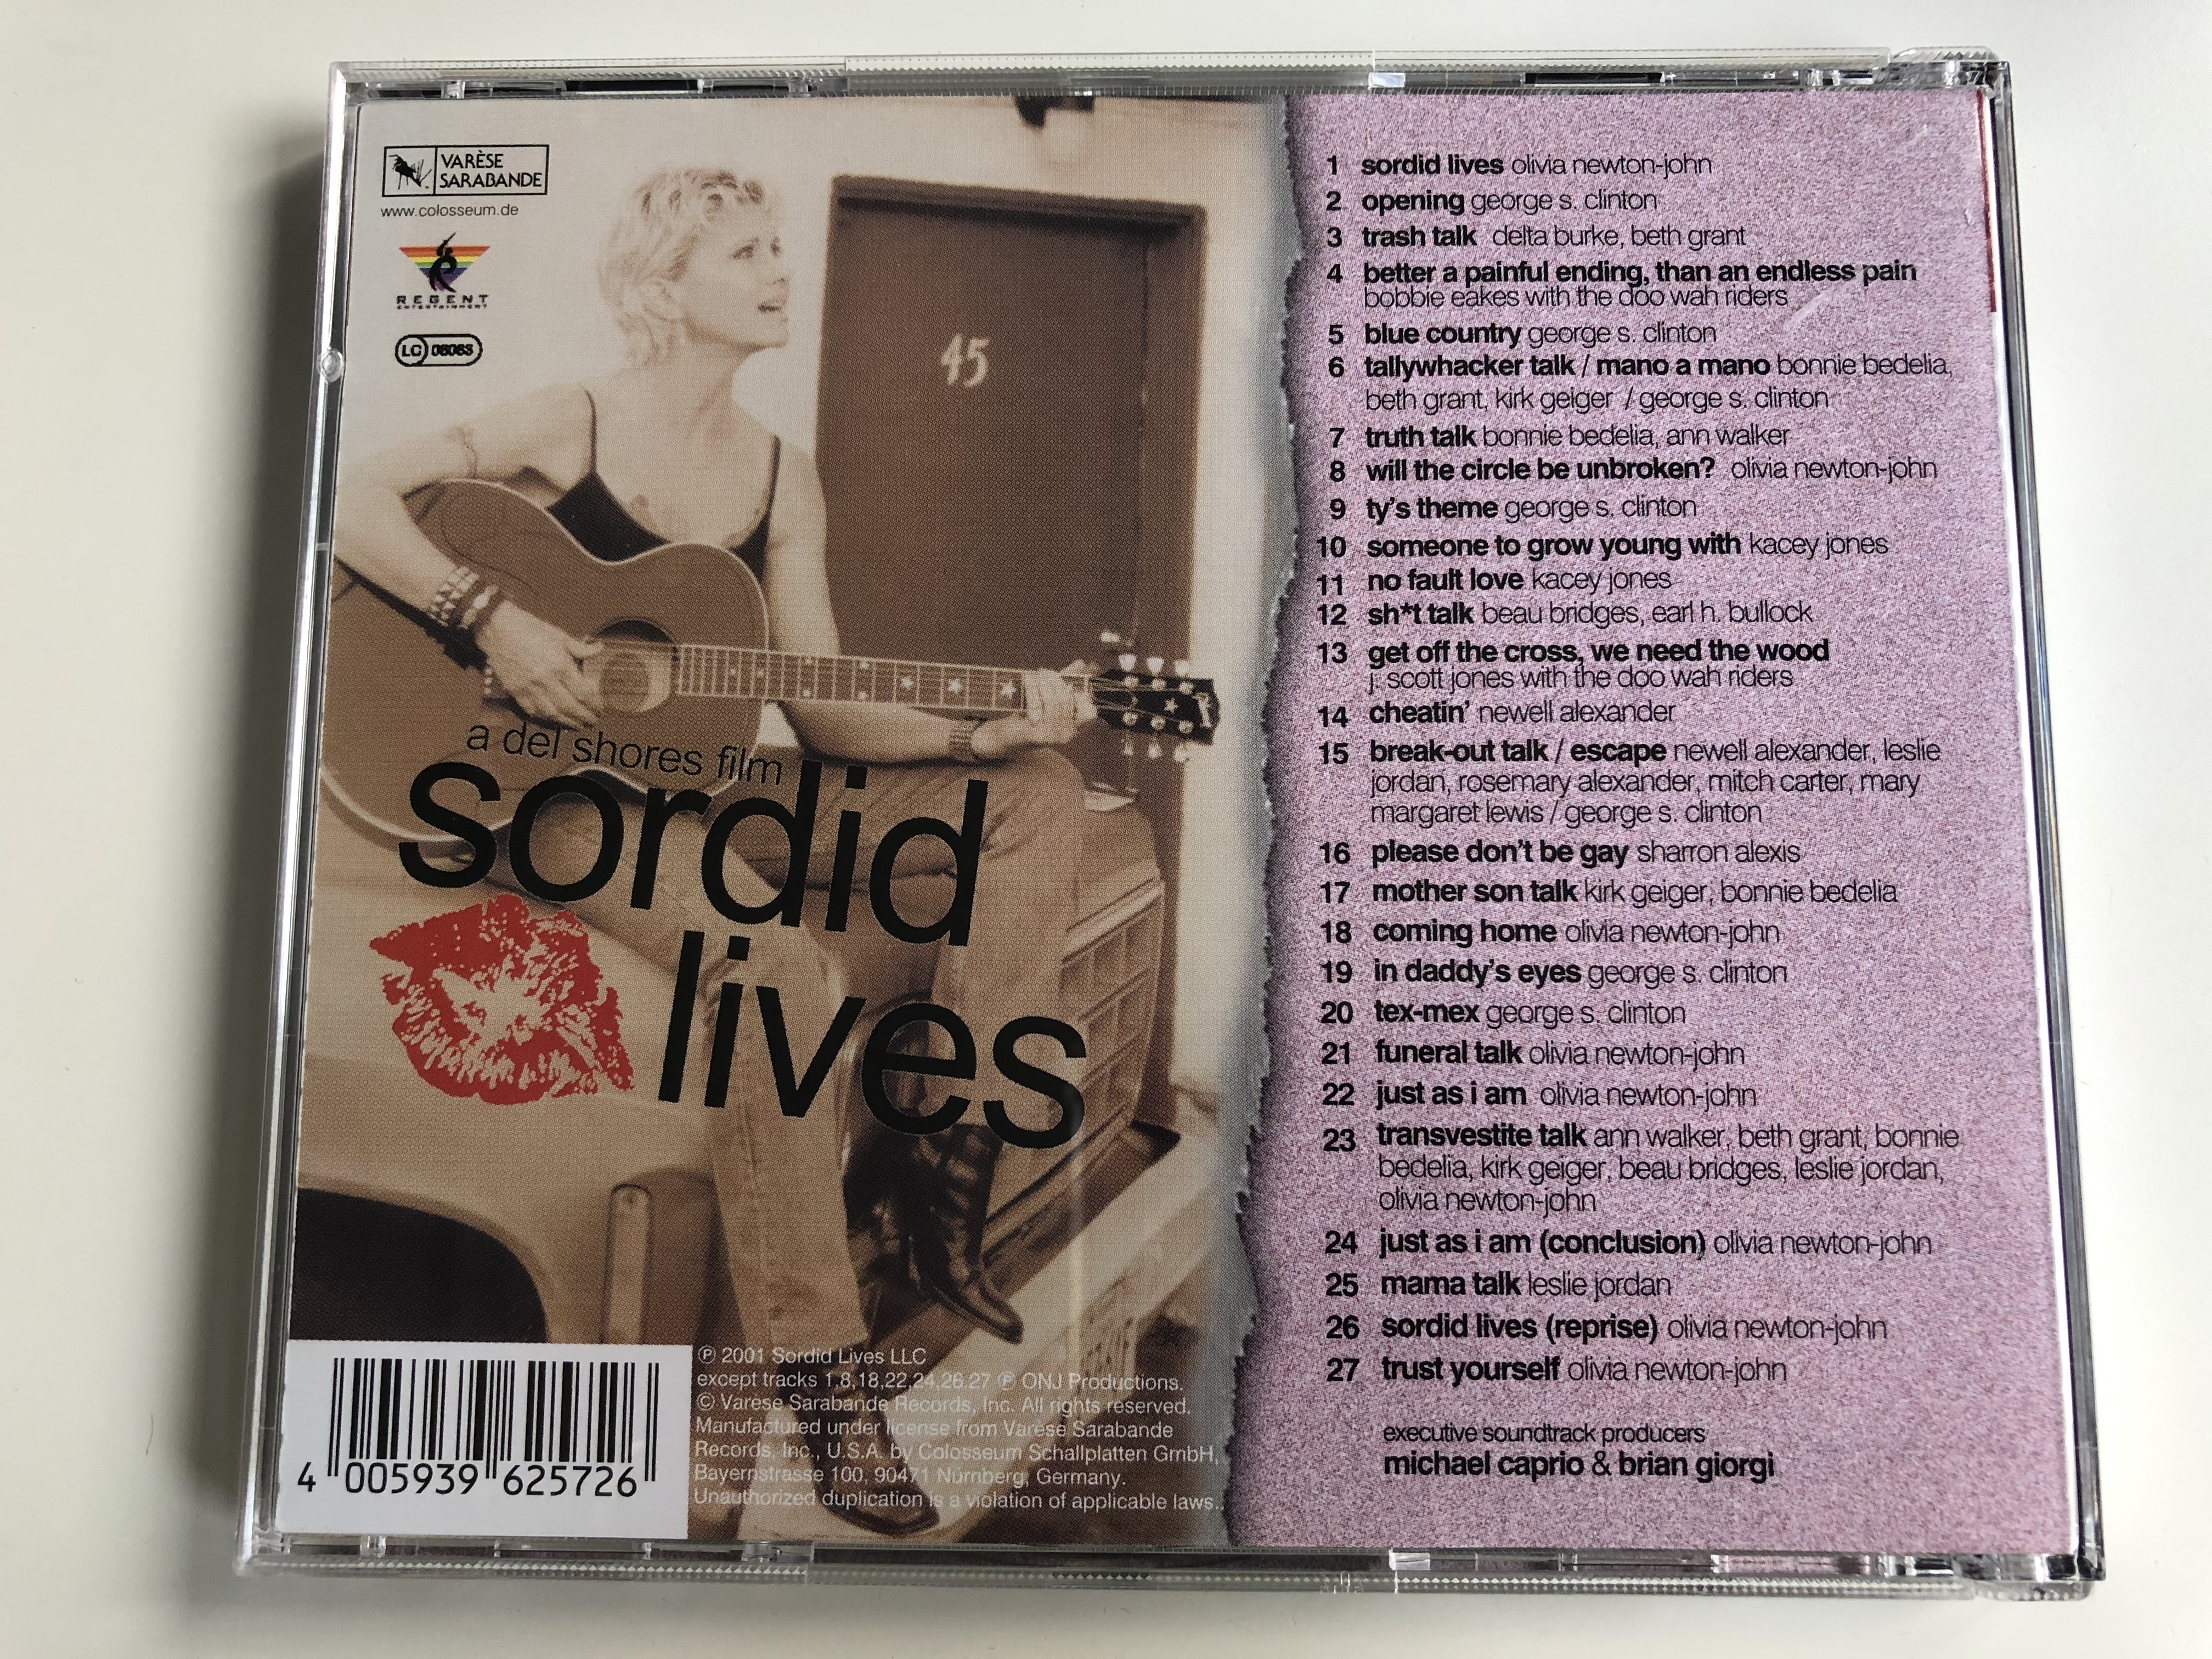 sordid-lives-original-motion-picture-soundtrack-var-se-sarabande-audio-cd-2001-vsd-6257-6-.jpg